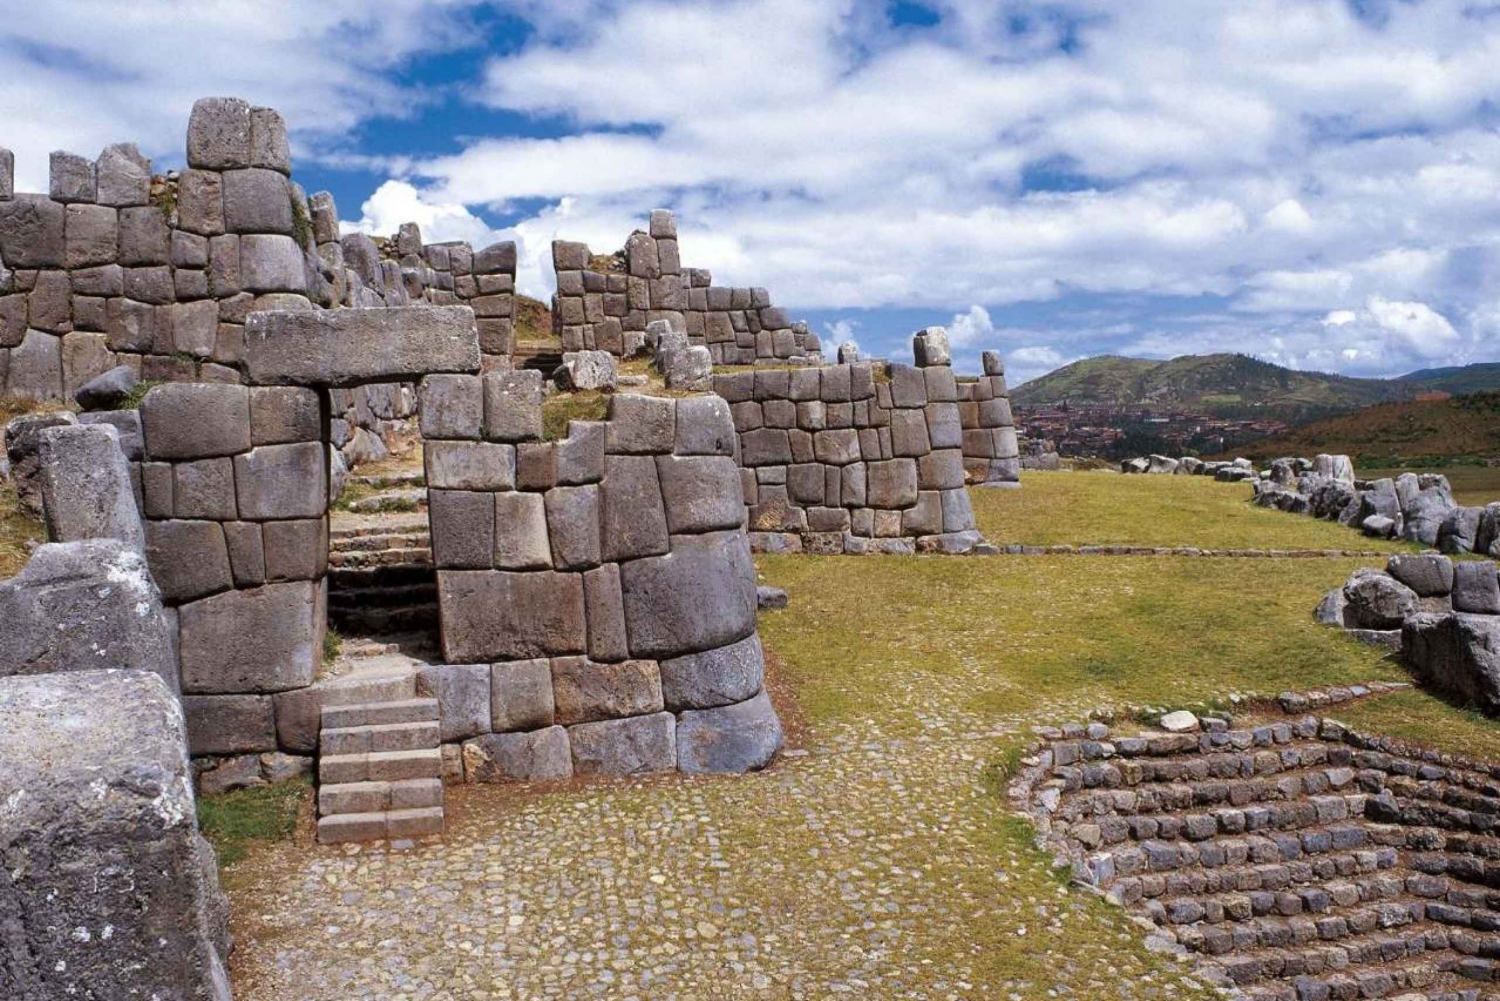 |Tour Cusco, Vale Sagrado, Machu Picchu - Bolívia 13 Dias|